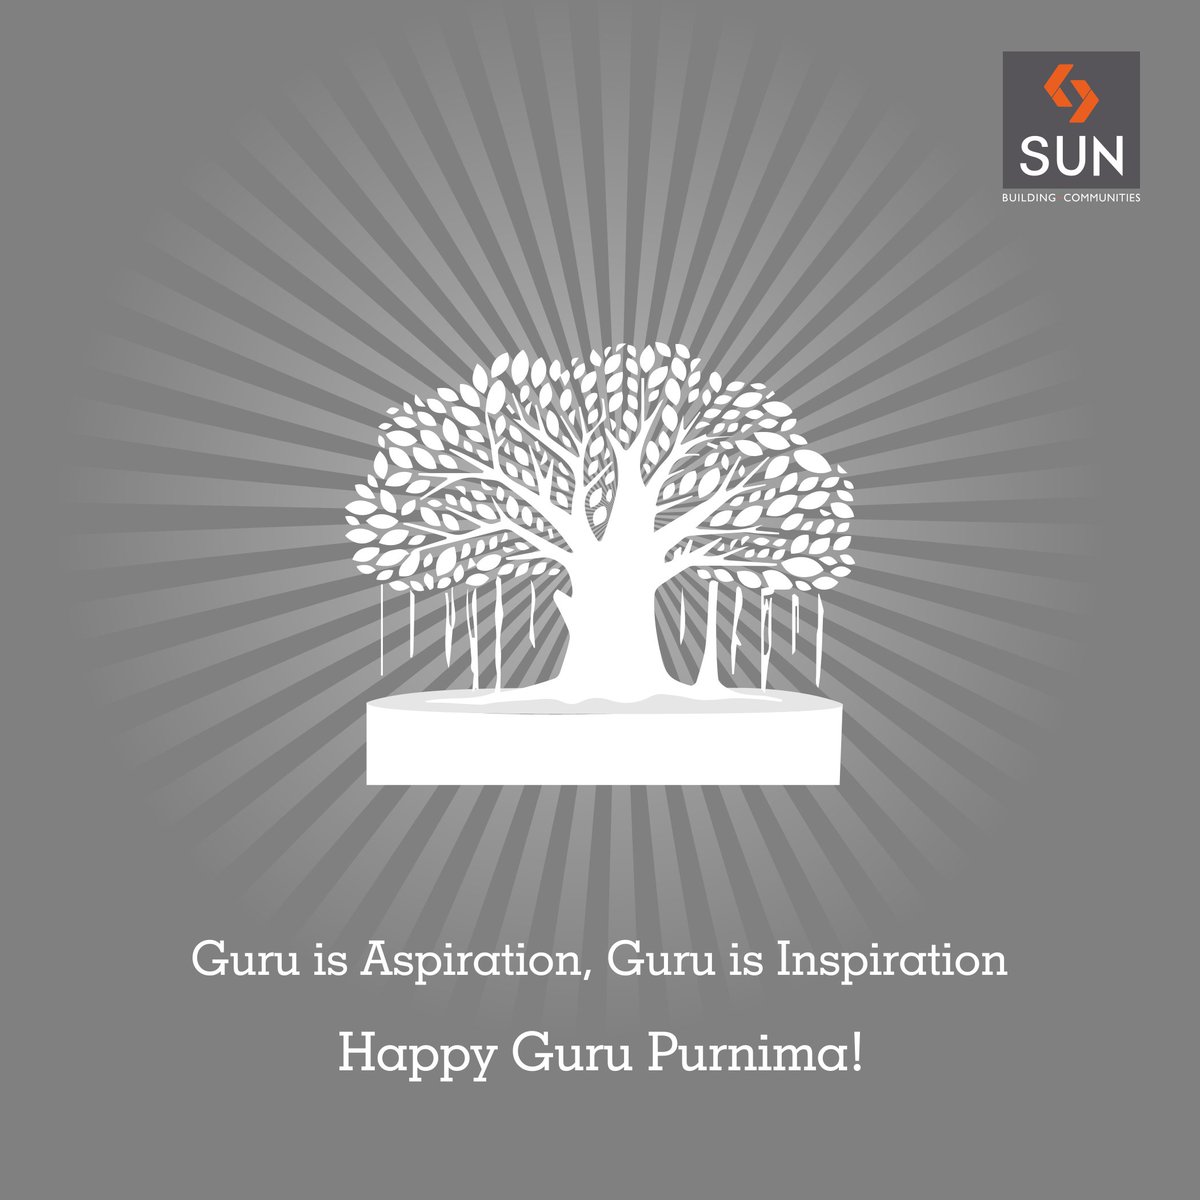 Sun Builders,  GuruPurnima., HappyGuruPurnima, Guru, Wisdom